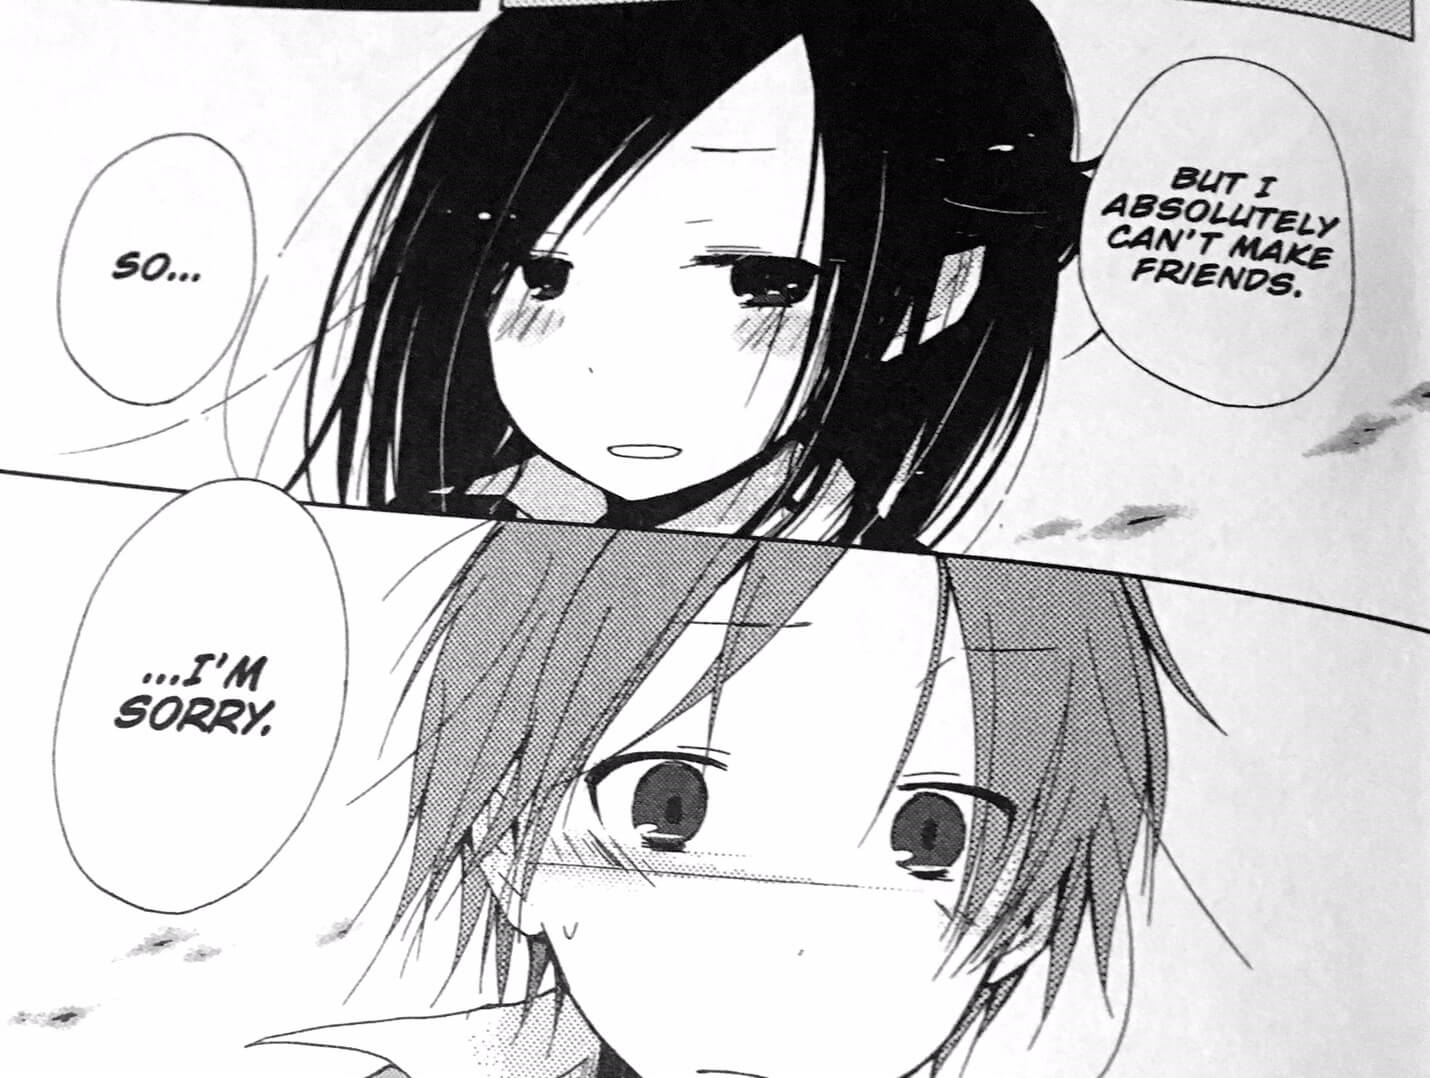 One Week Friends: Kaori tells Yuuki she can't be his friend.